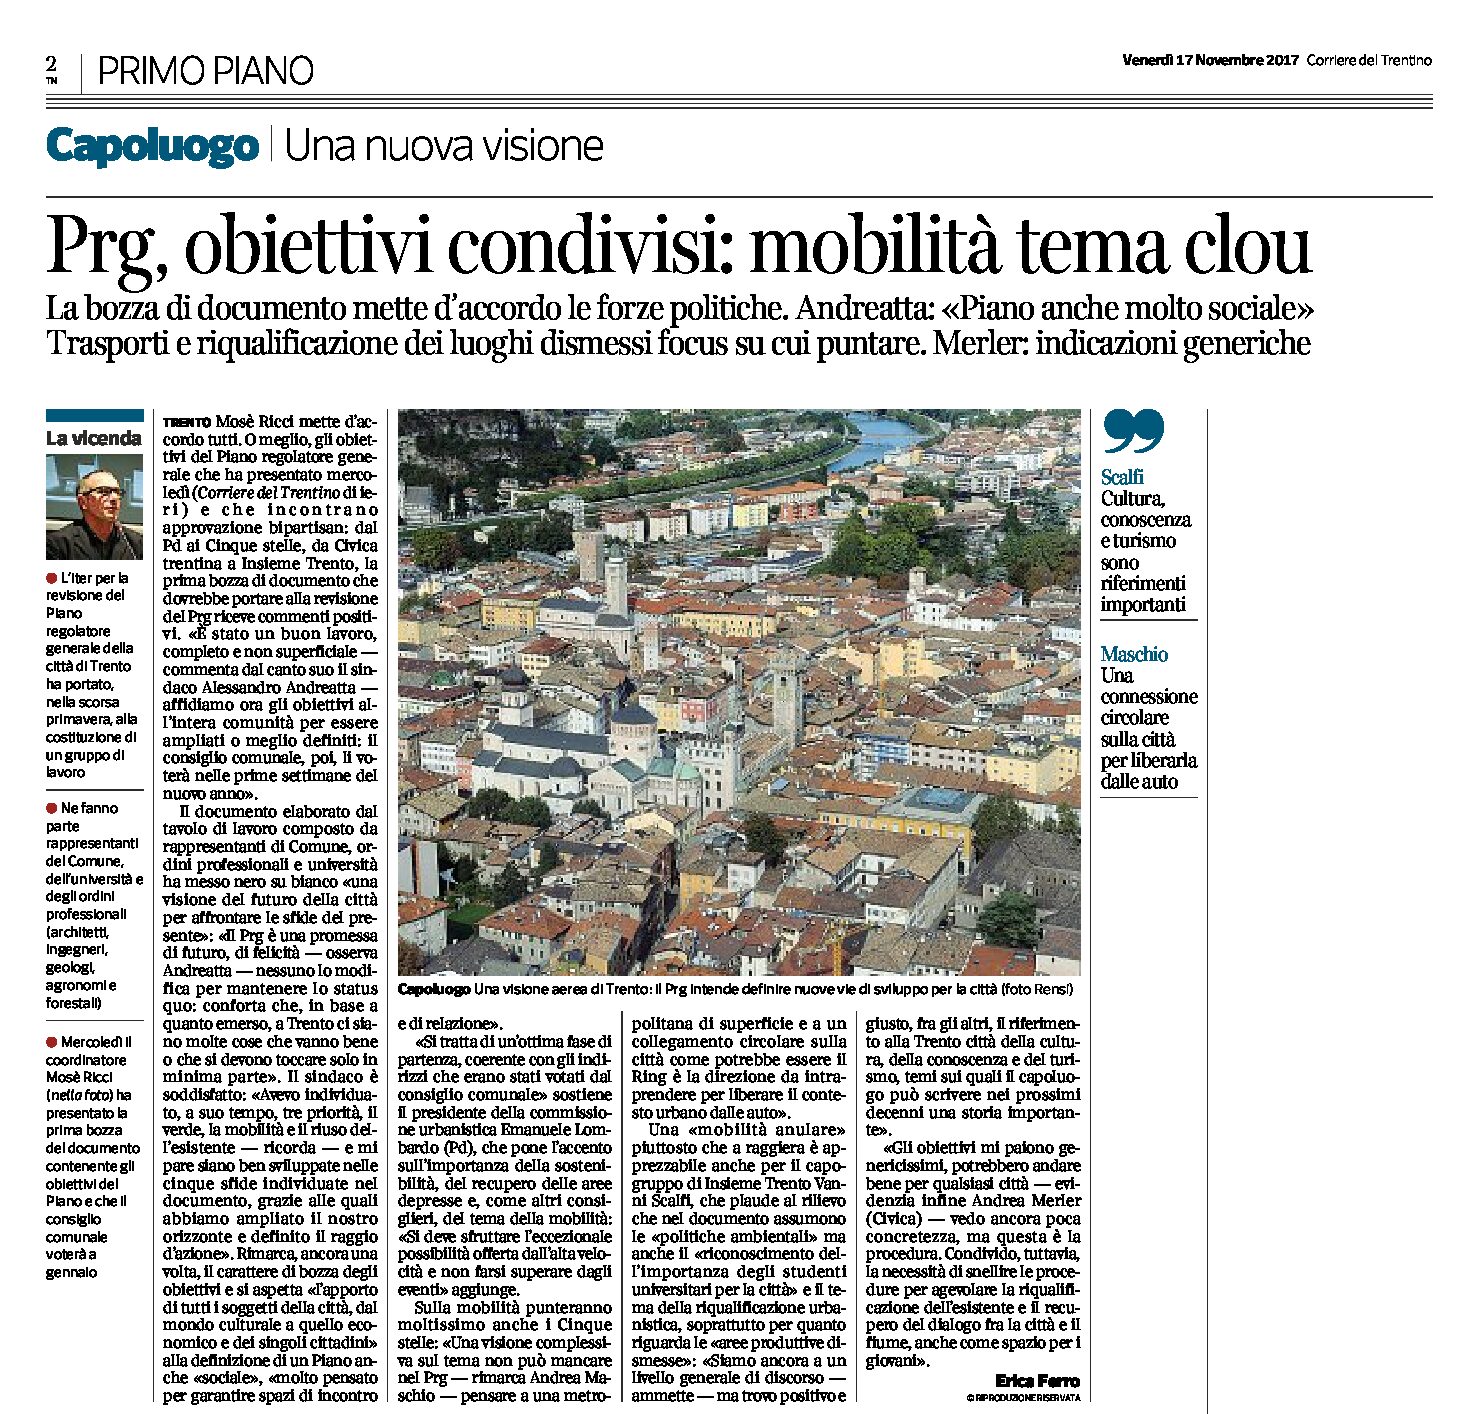 Trento, Prg: obiettivi condivisi, mobilità tema clou